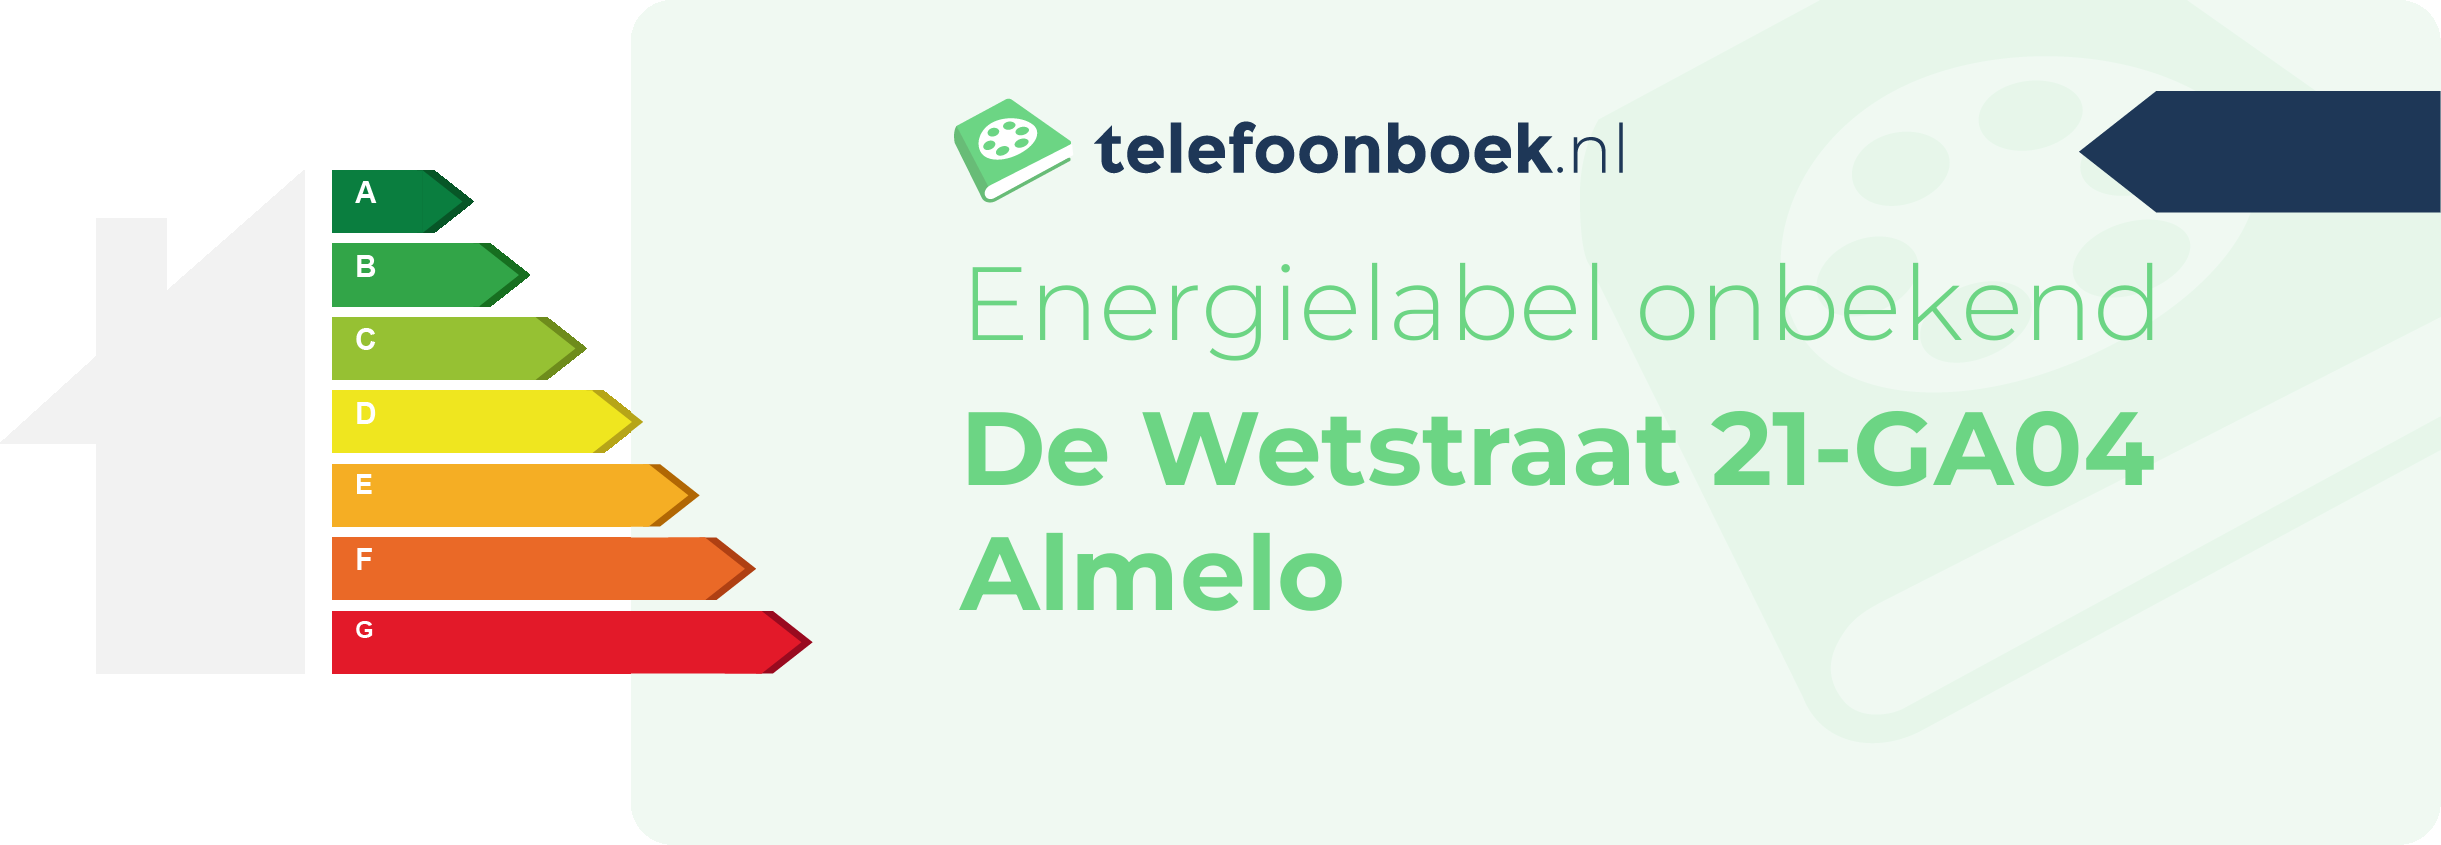 Energielabel De Wetstraat 21-GA04 Almelo